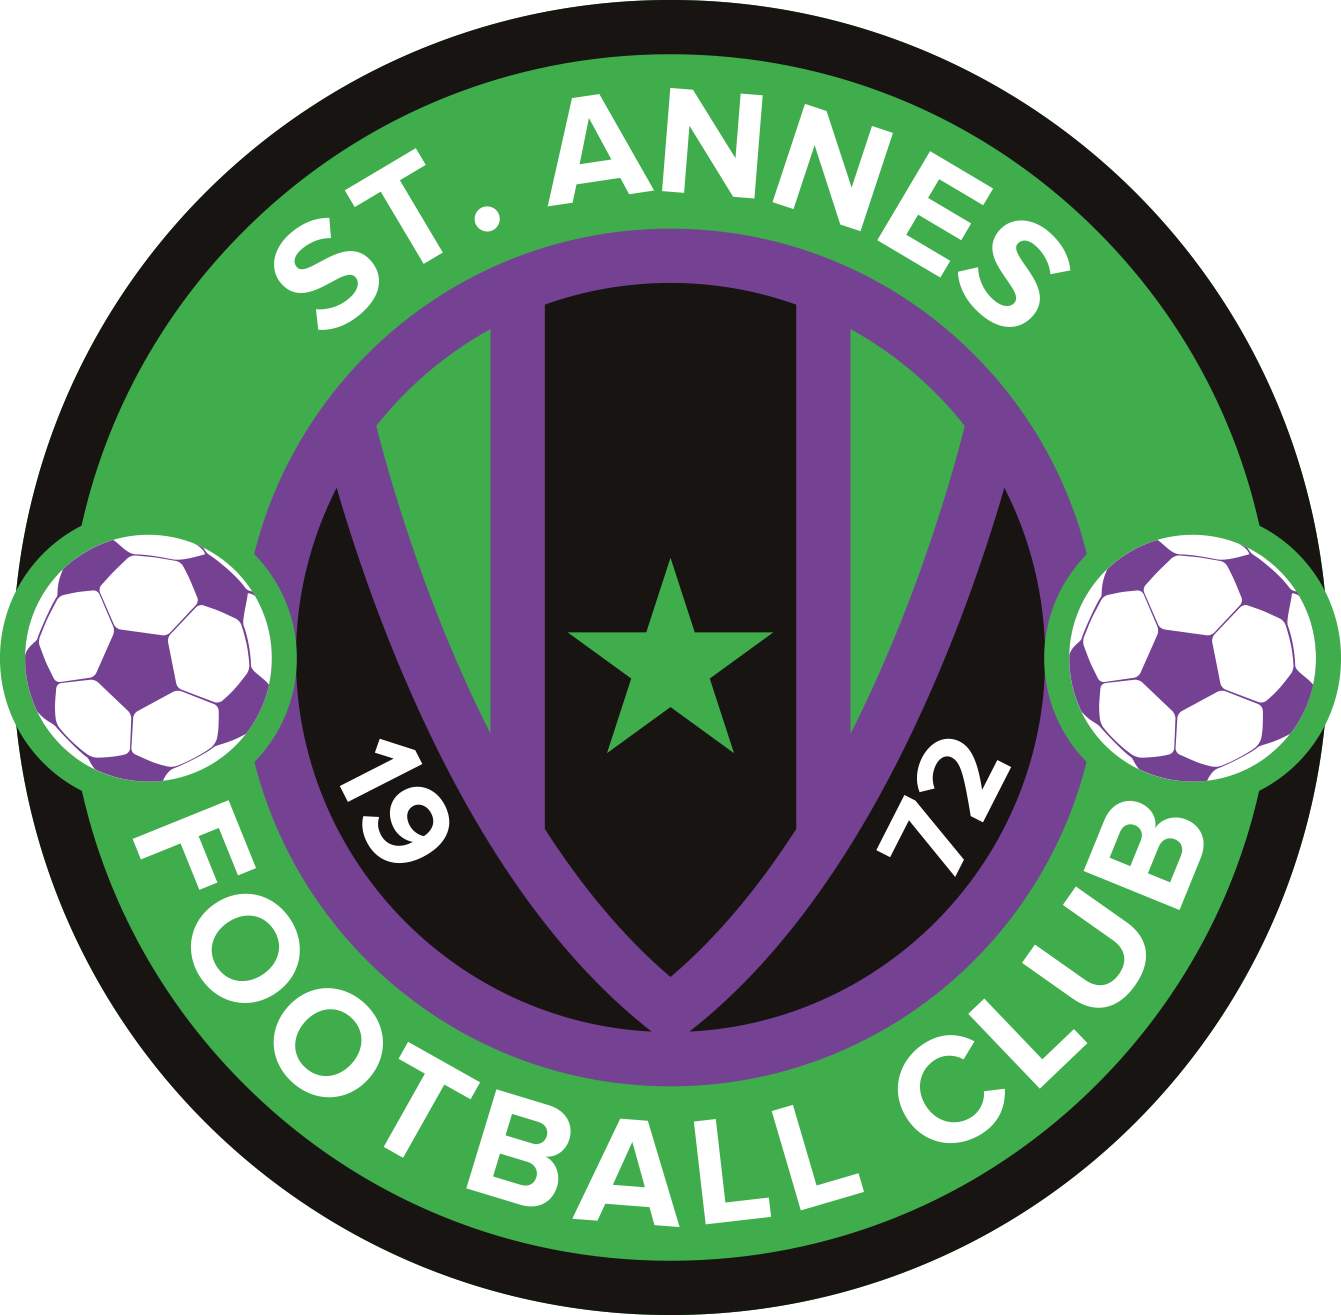 St. Annes Football Club